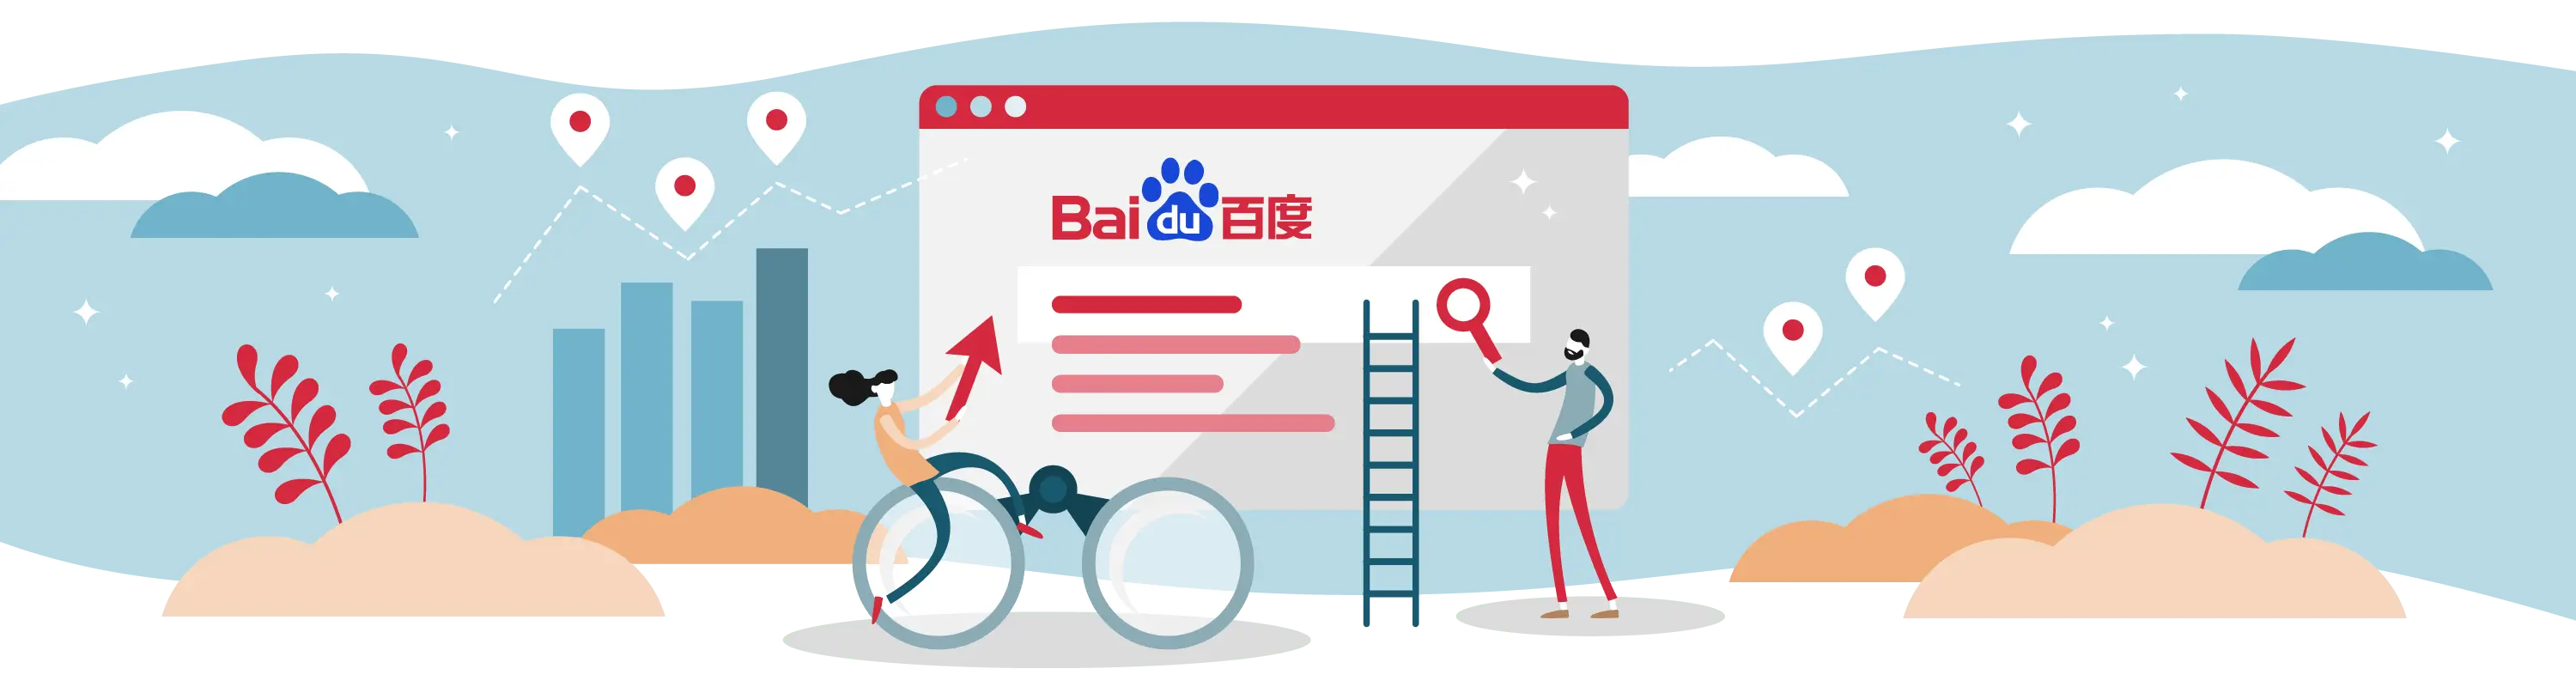 เพิ่มความเชี่ยวชาญในการใช้งาน Baidu ด้วย คู่มือเกี่ยวกับเครื่องมือค้นหาที่ทรงพลังของจีน